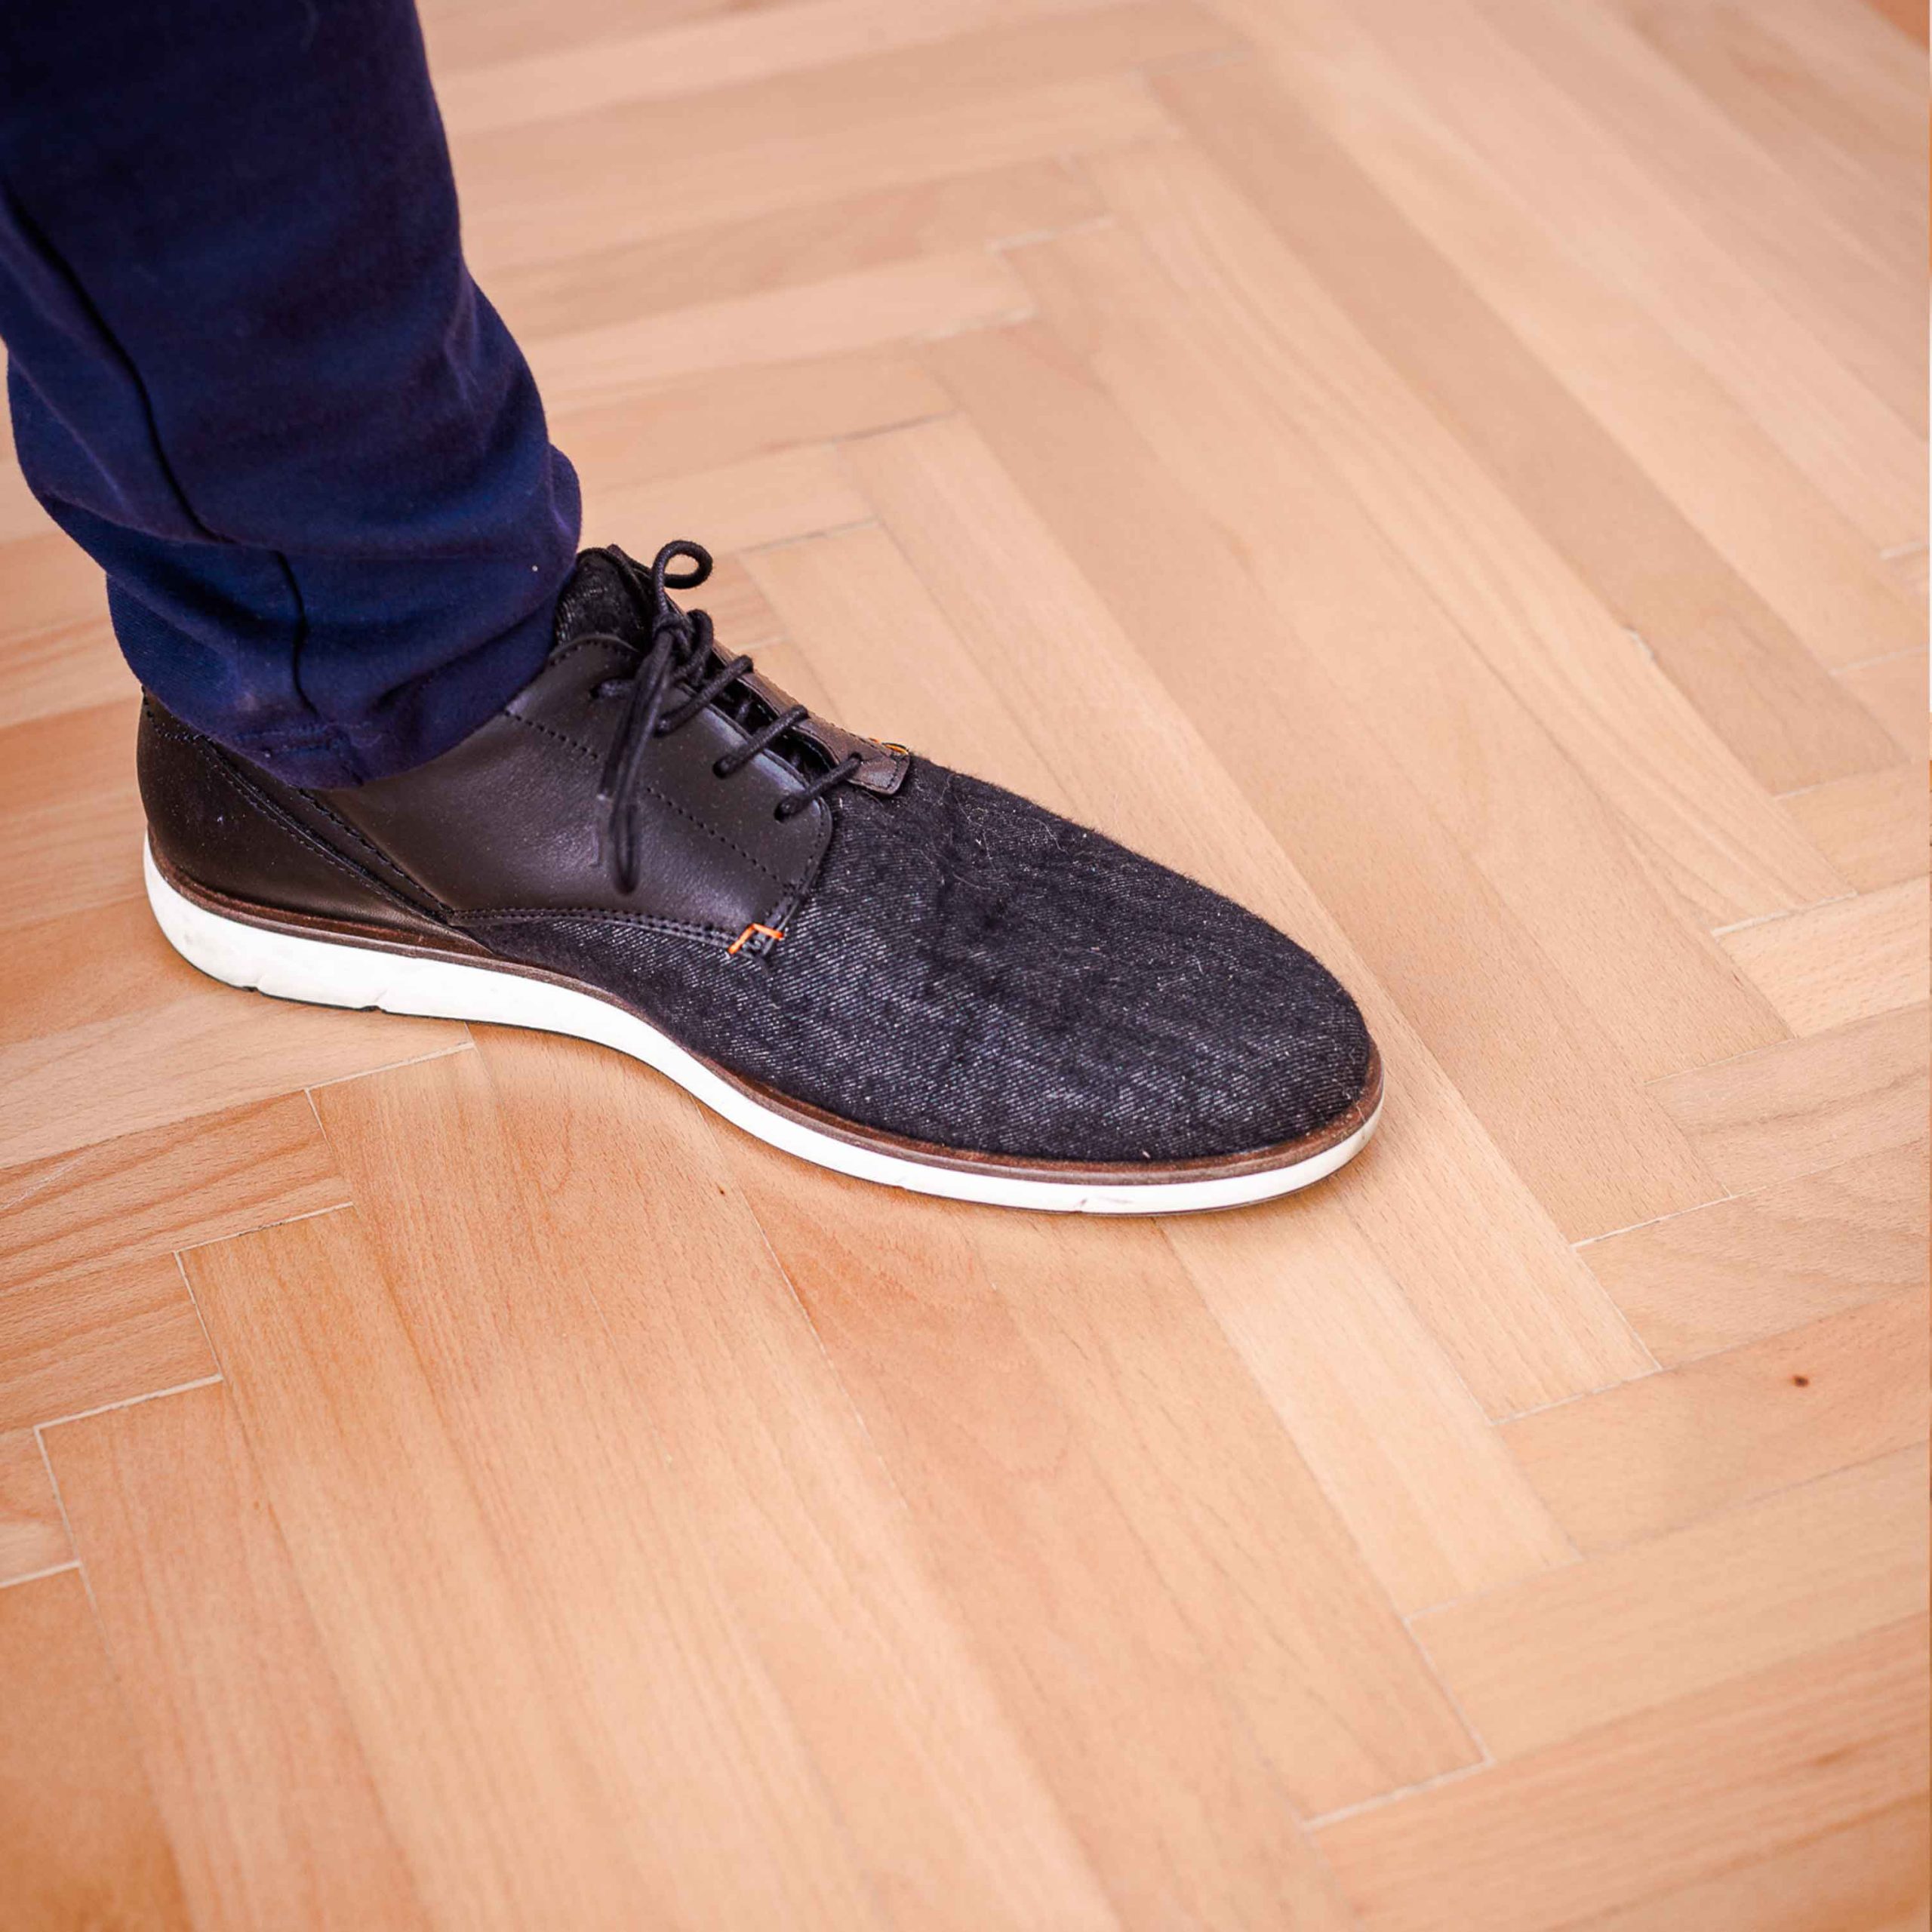 Foto zeigt Schuh auf frisch saniertem Holzboden.